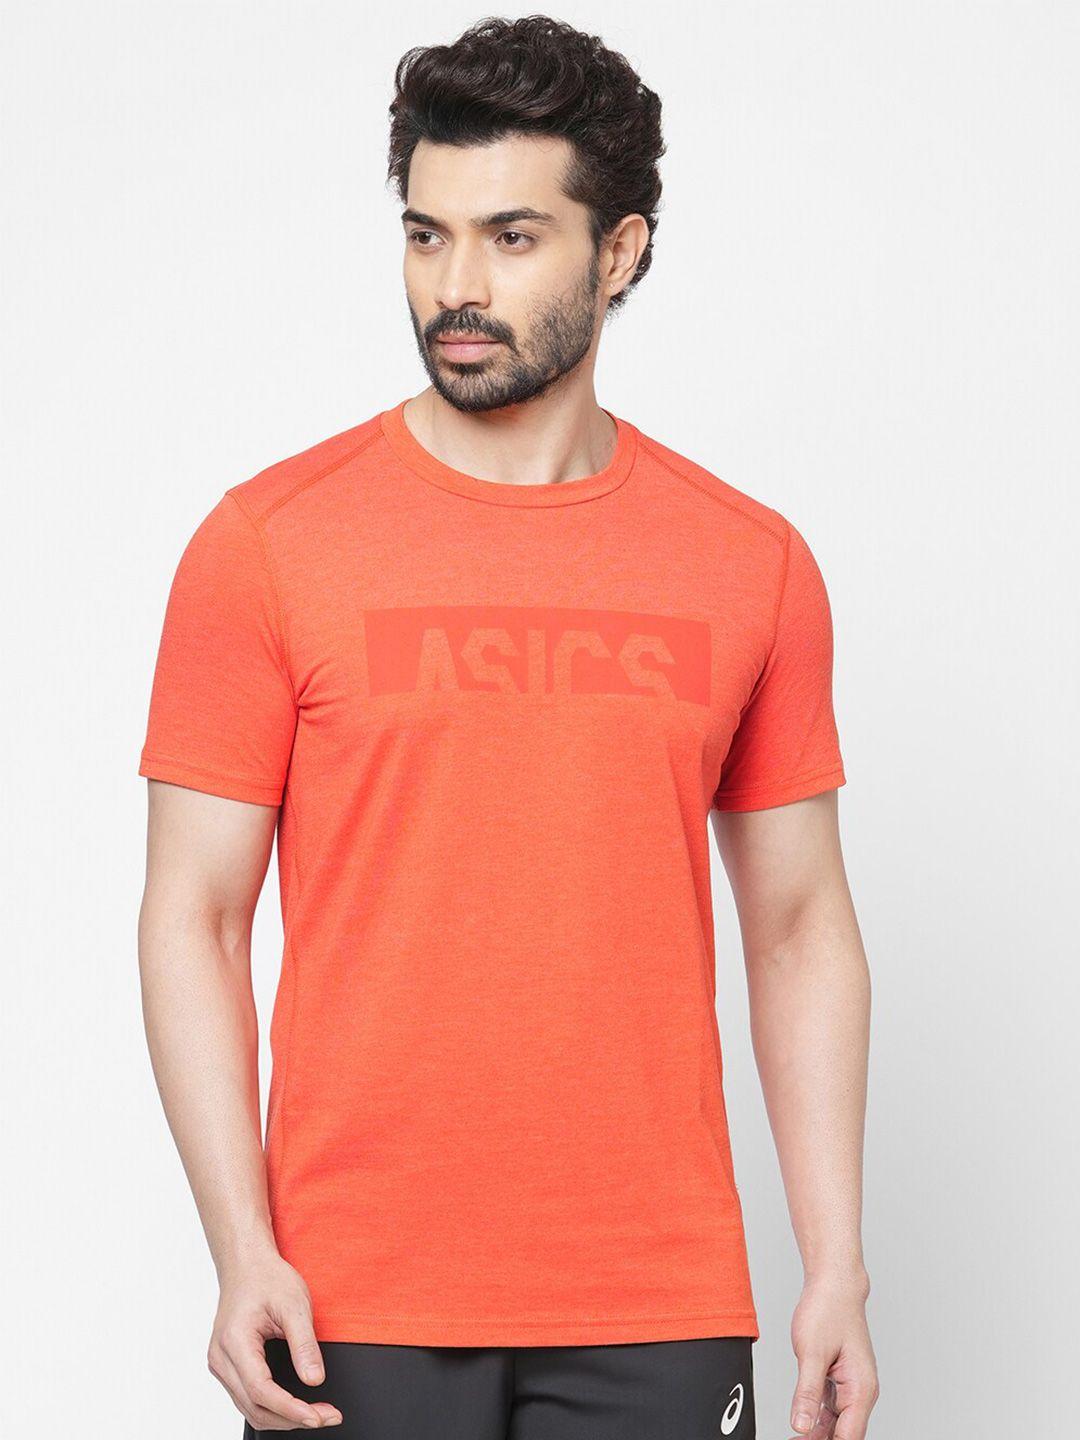 asics men orange typography printed cotton t-shirt